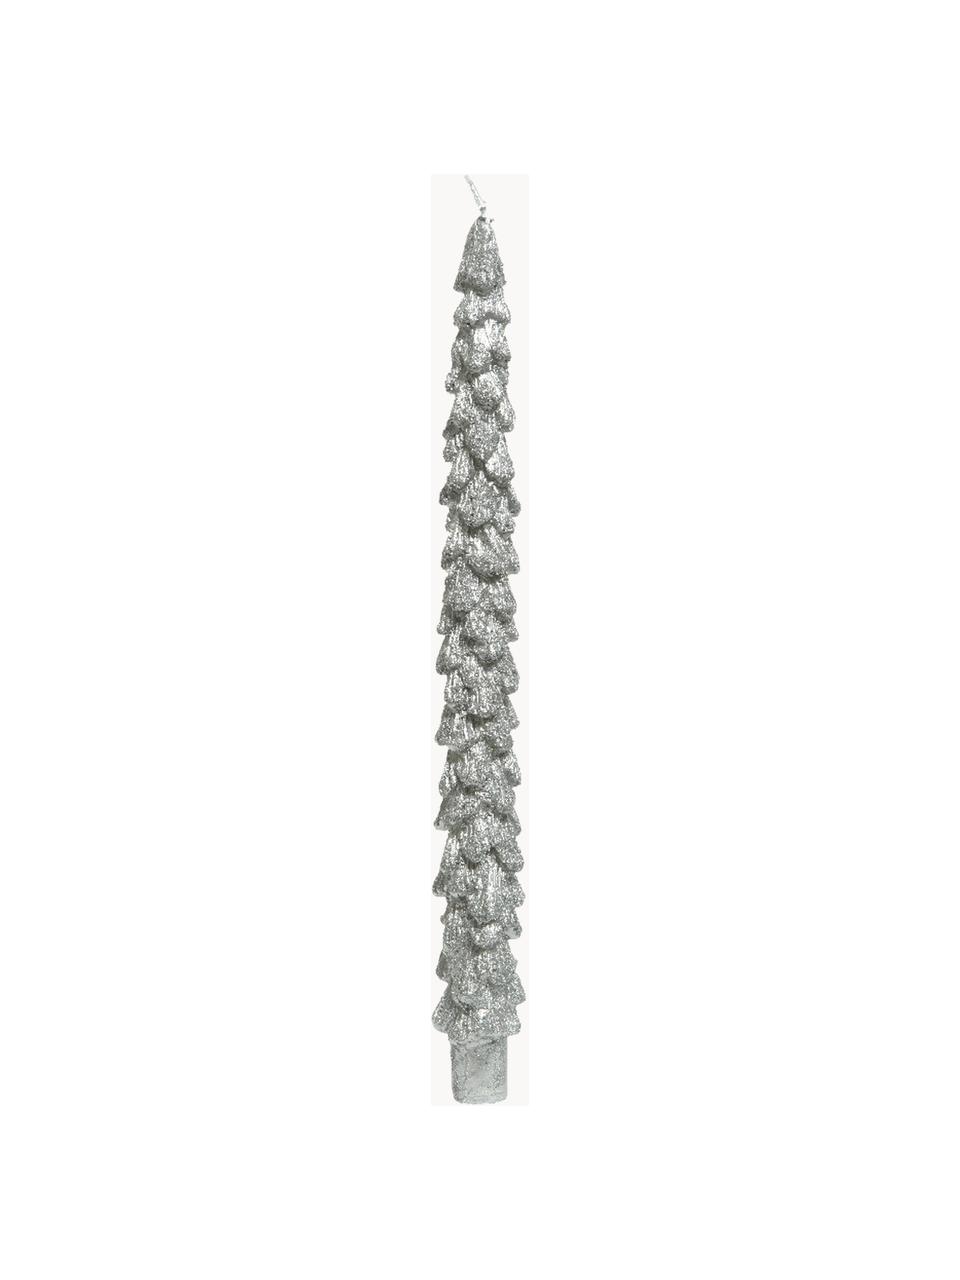 Stolní svíčky ve tvaru vánočního stromečku Monika, 2 ks, Vosk, Stříbrná, Ø 2 cm, V 26 cm